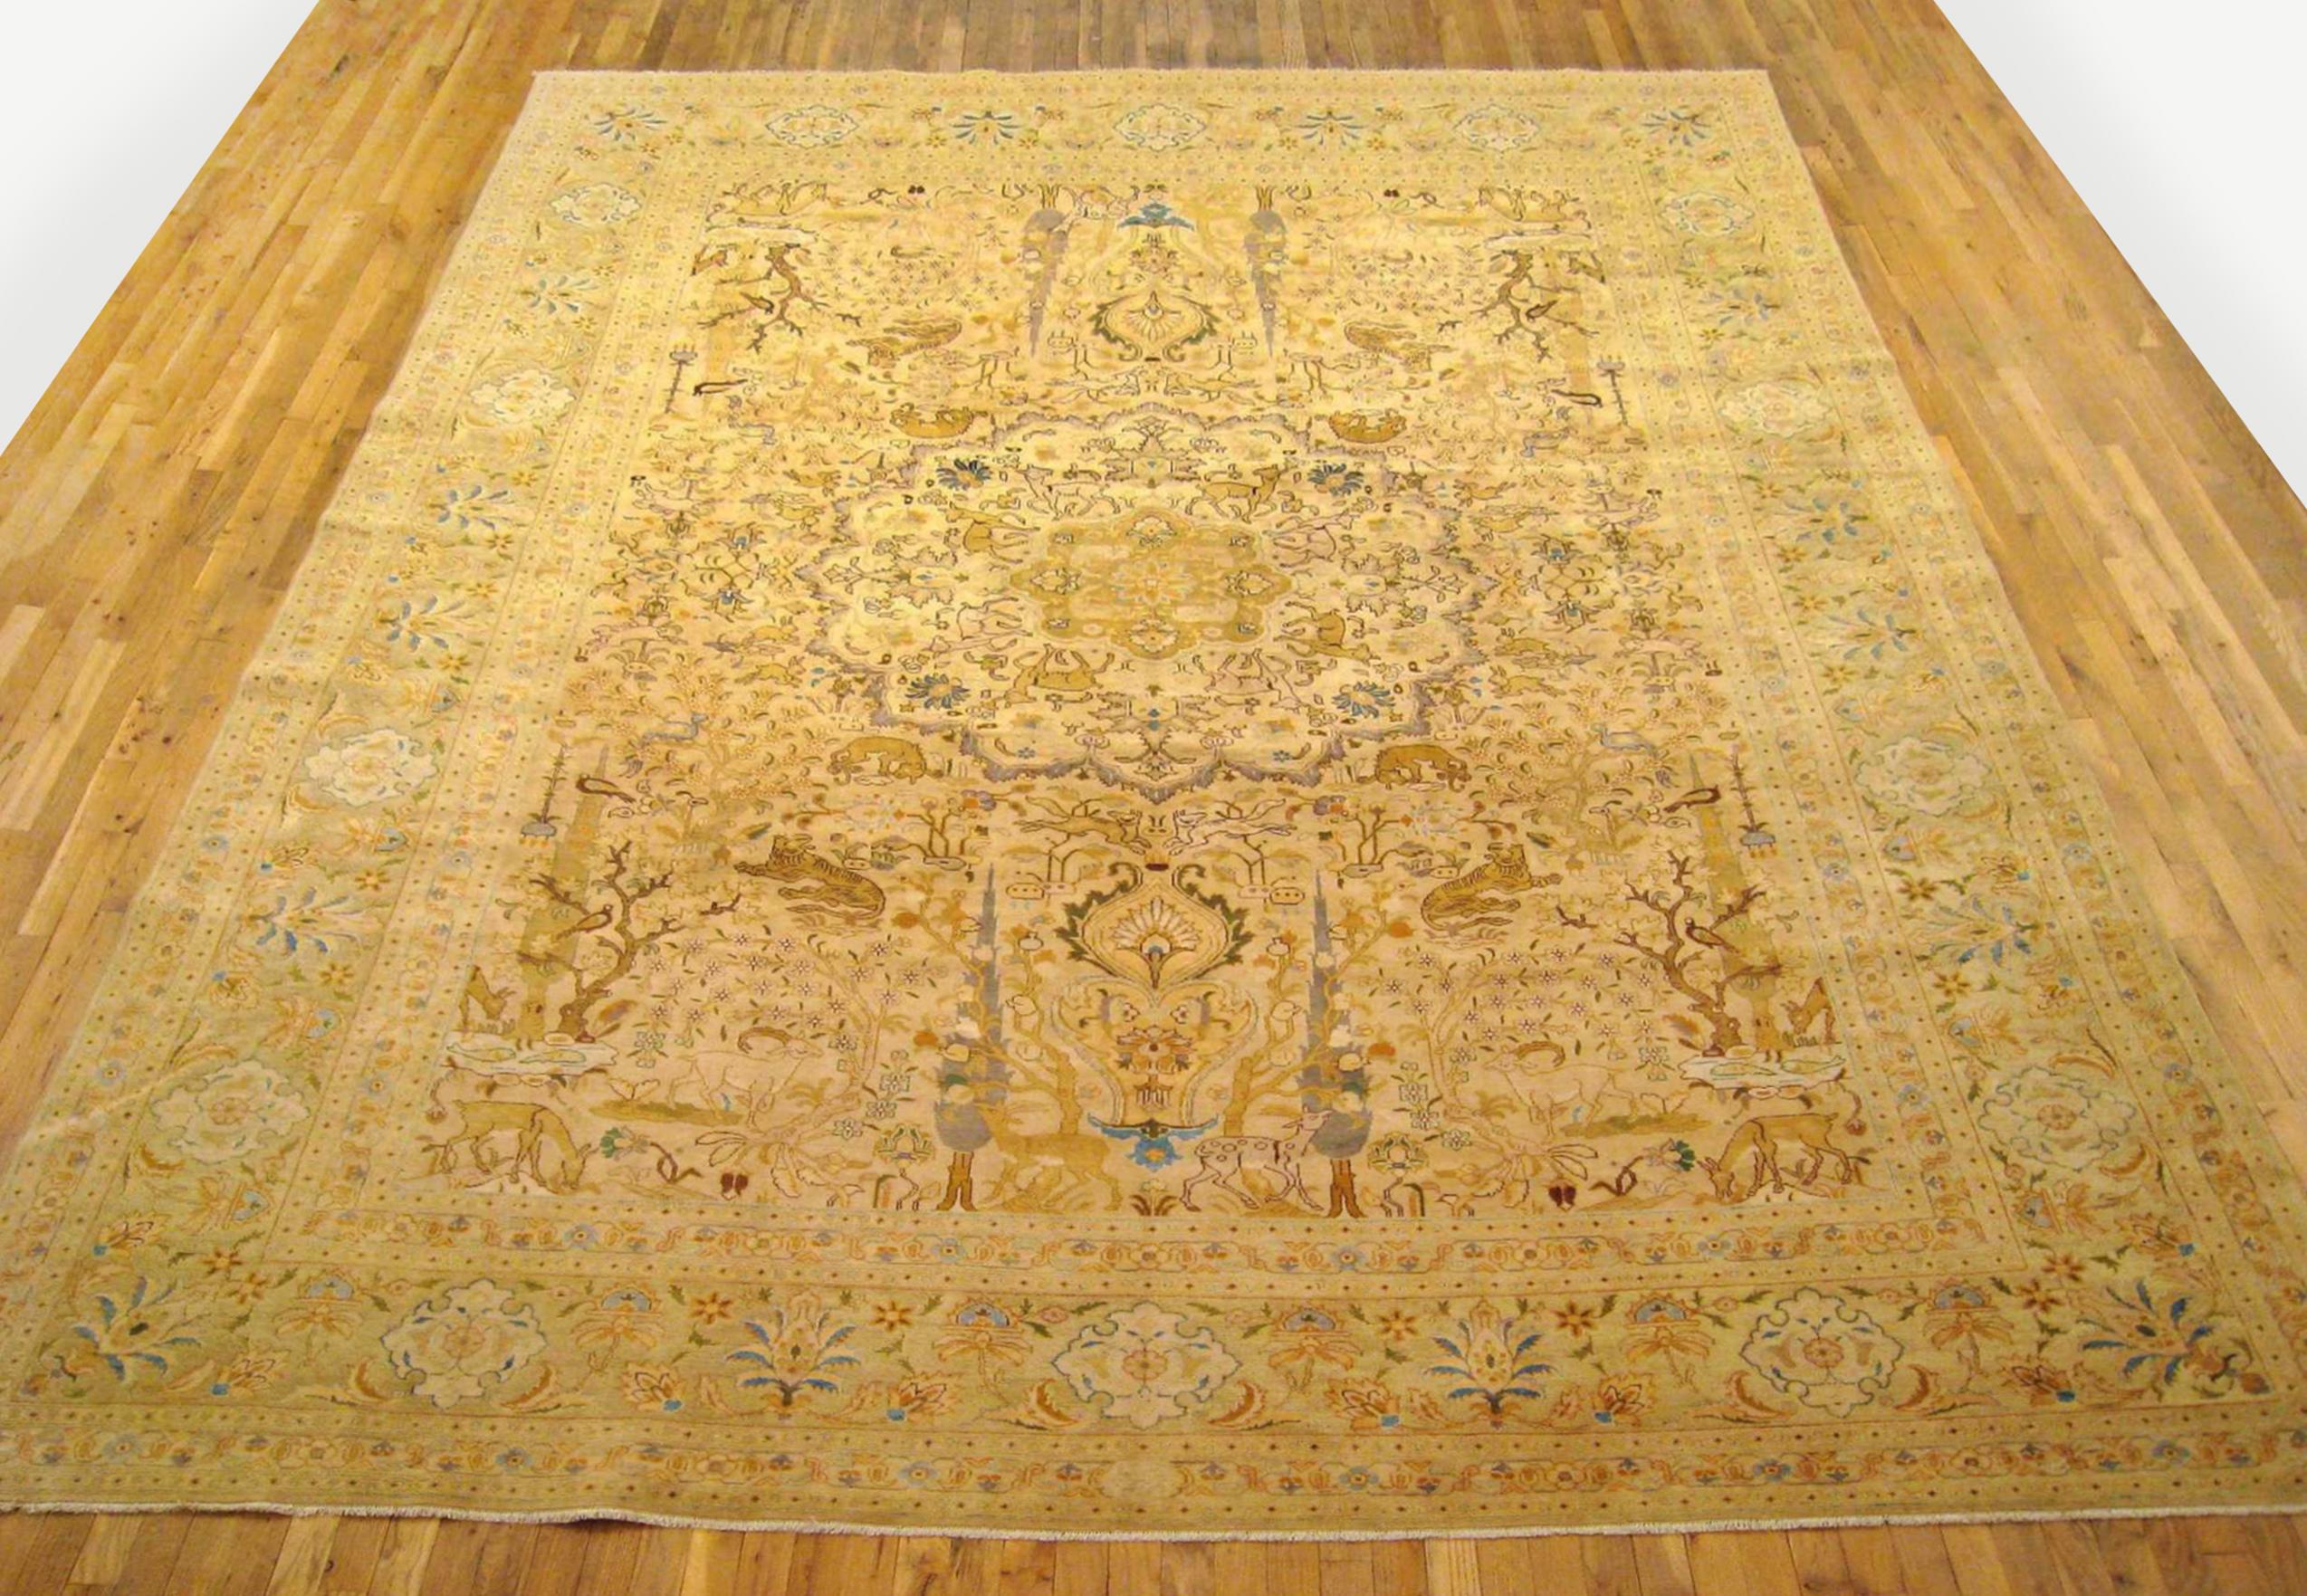 Antique Persian Tabriz Oriental carpet, circa 1920, Room Sized

An antique Persian Tabriz oriental carpet, circa 1920. Size: 13'4